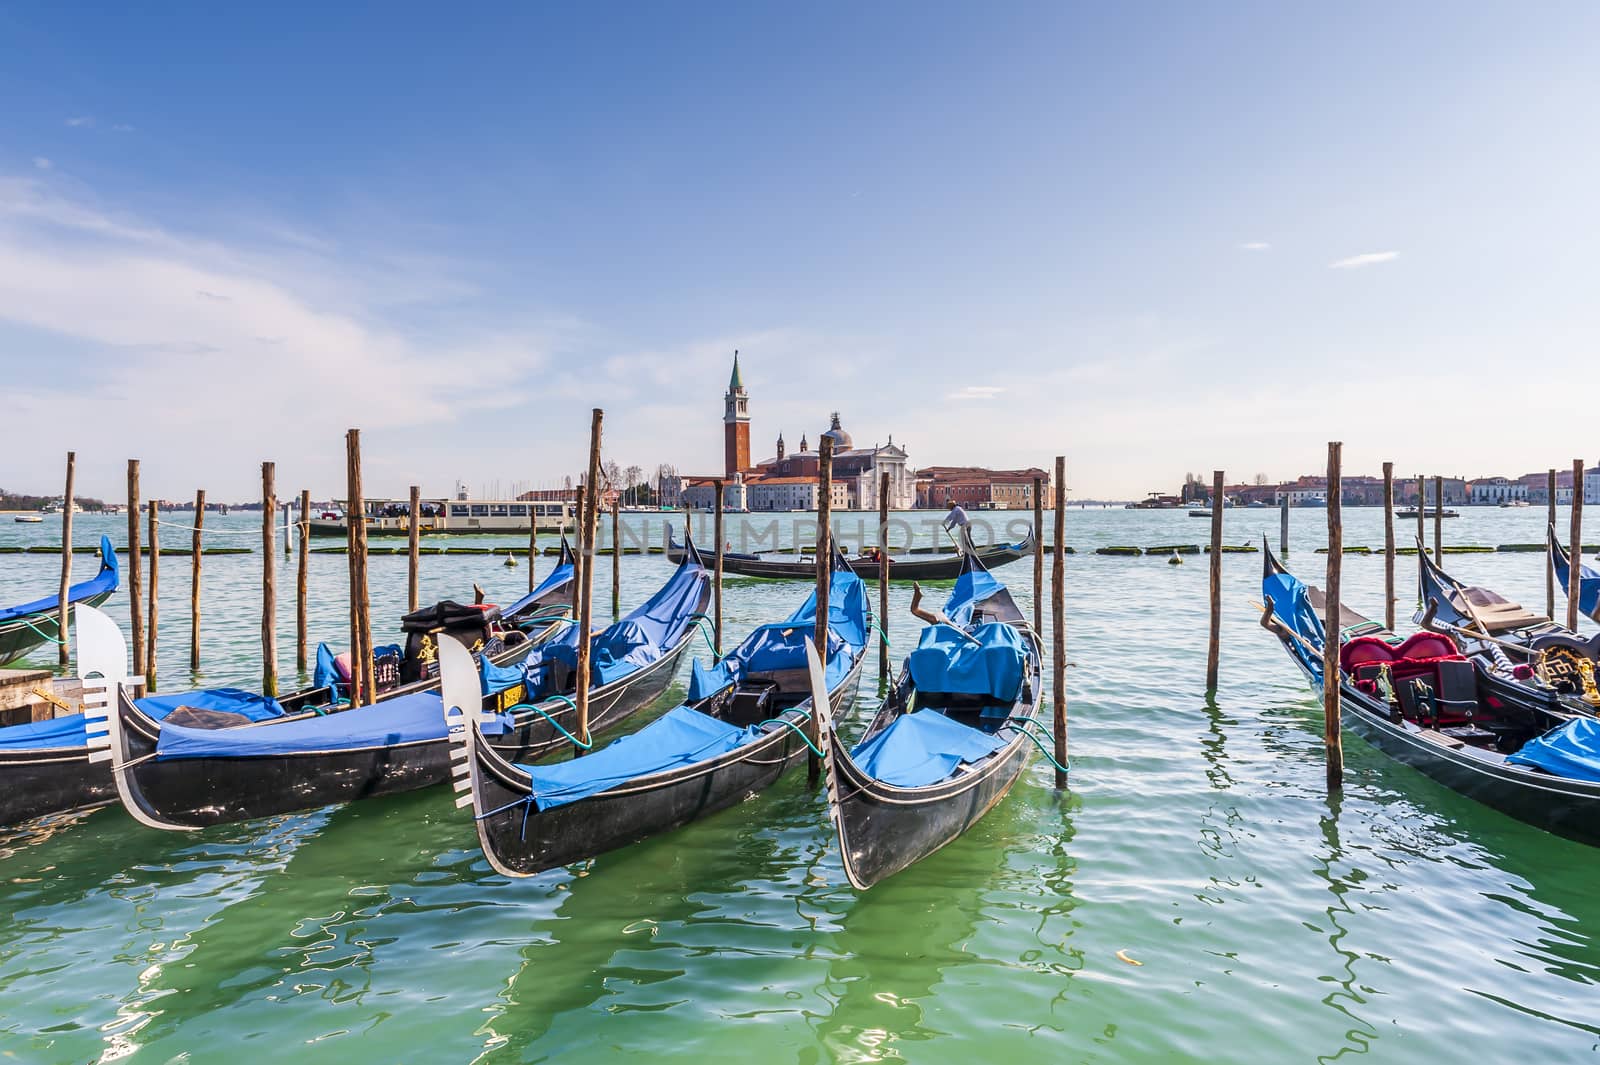 Alignment of gondolas near Saint Mark's Square on the Grand Canal in Venice and in the background the island of San Giorgio Maggiore.